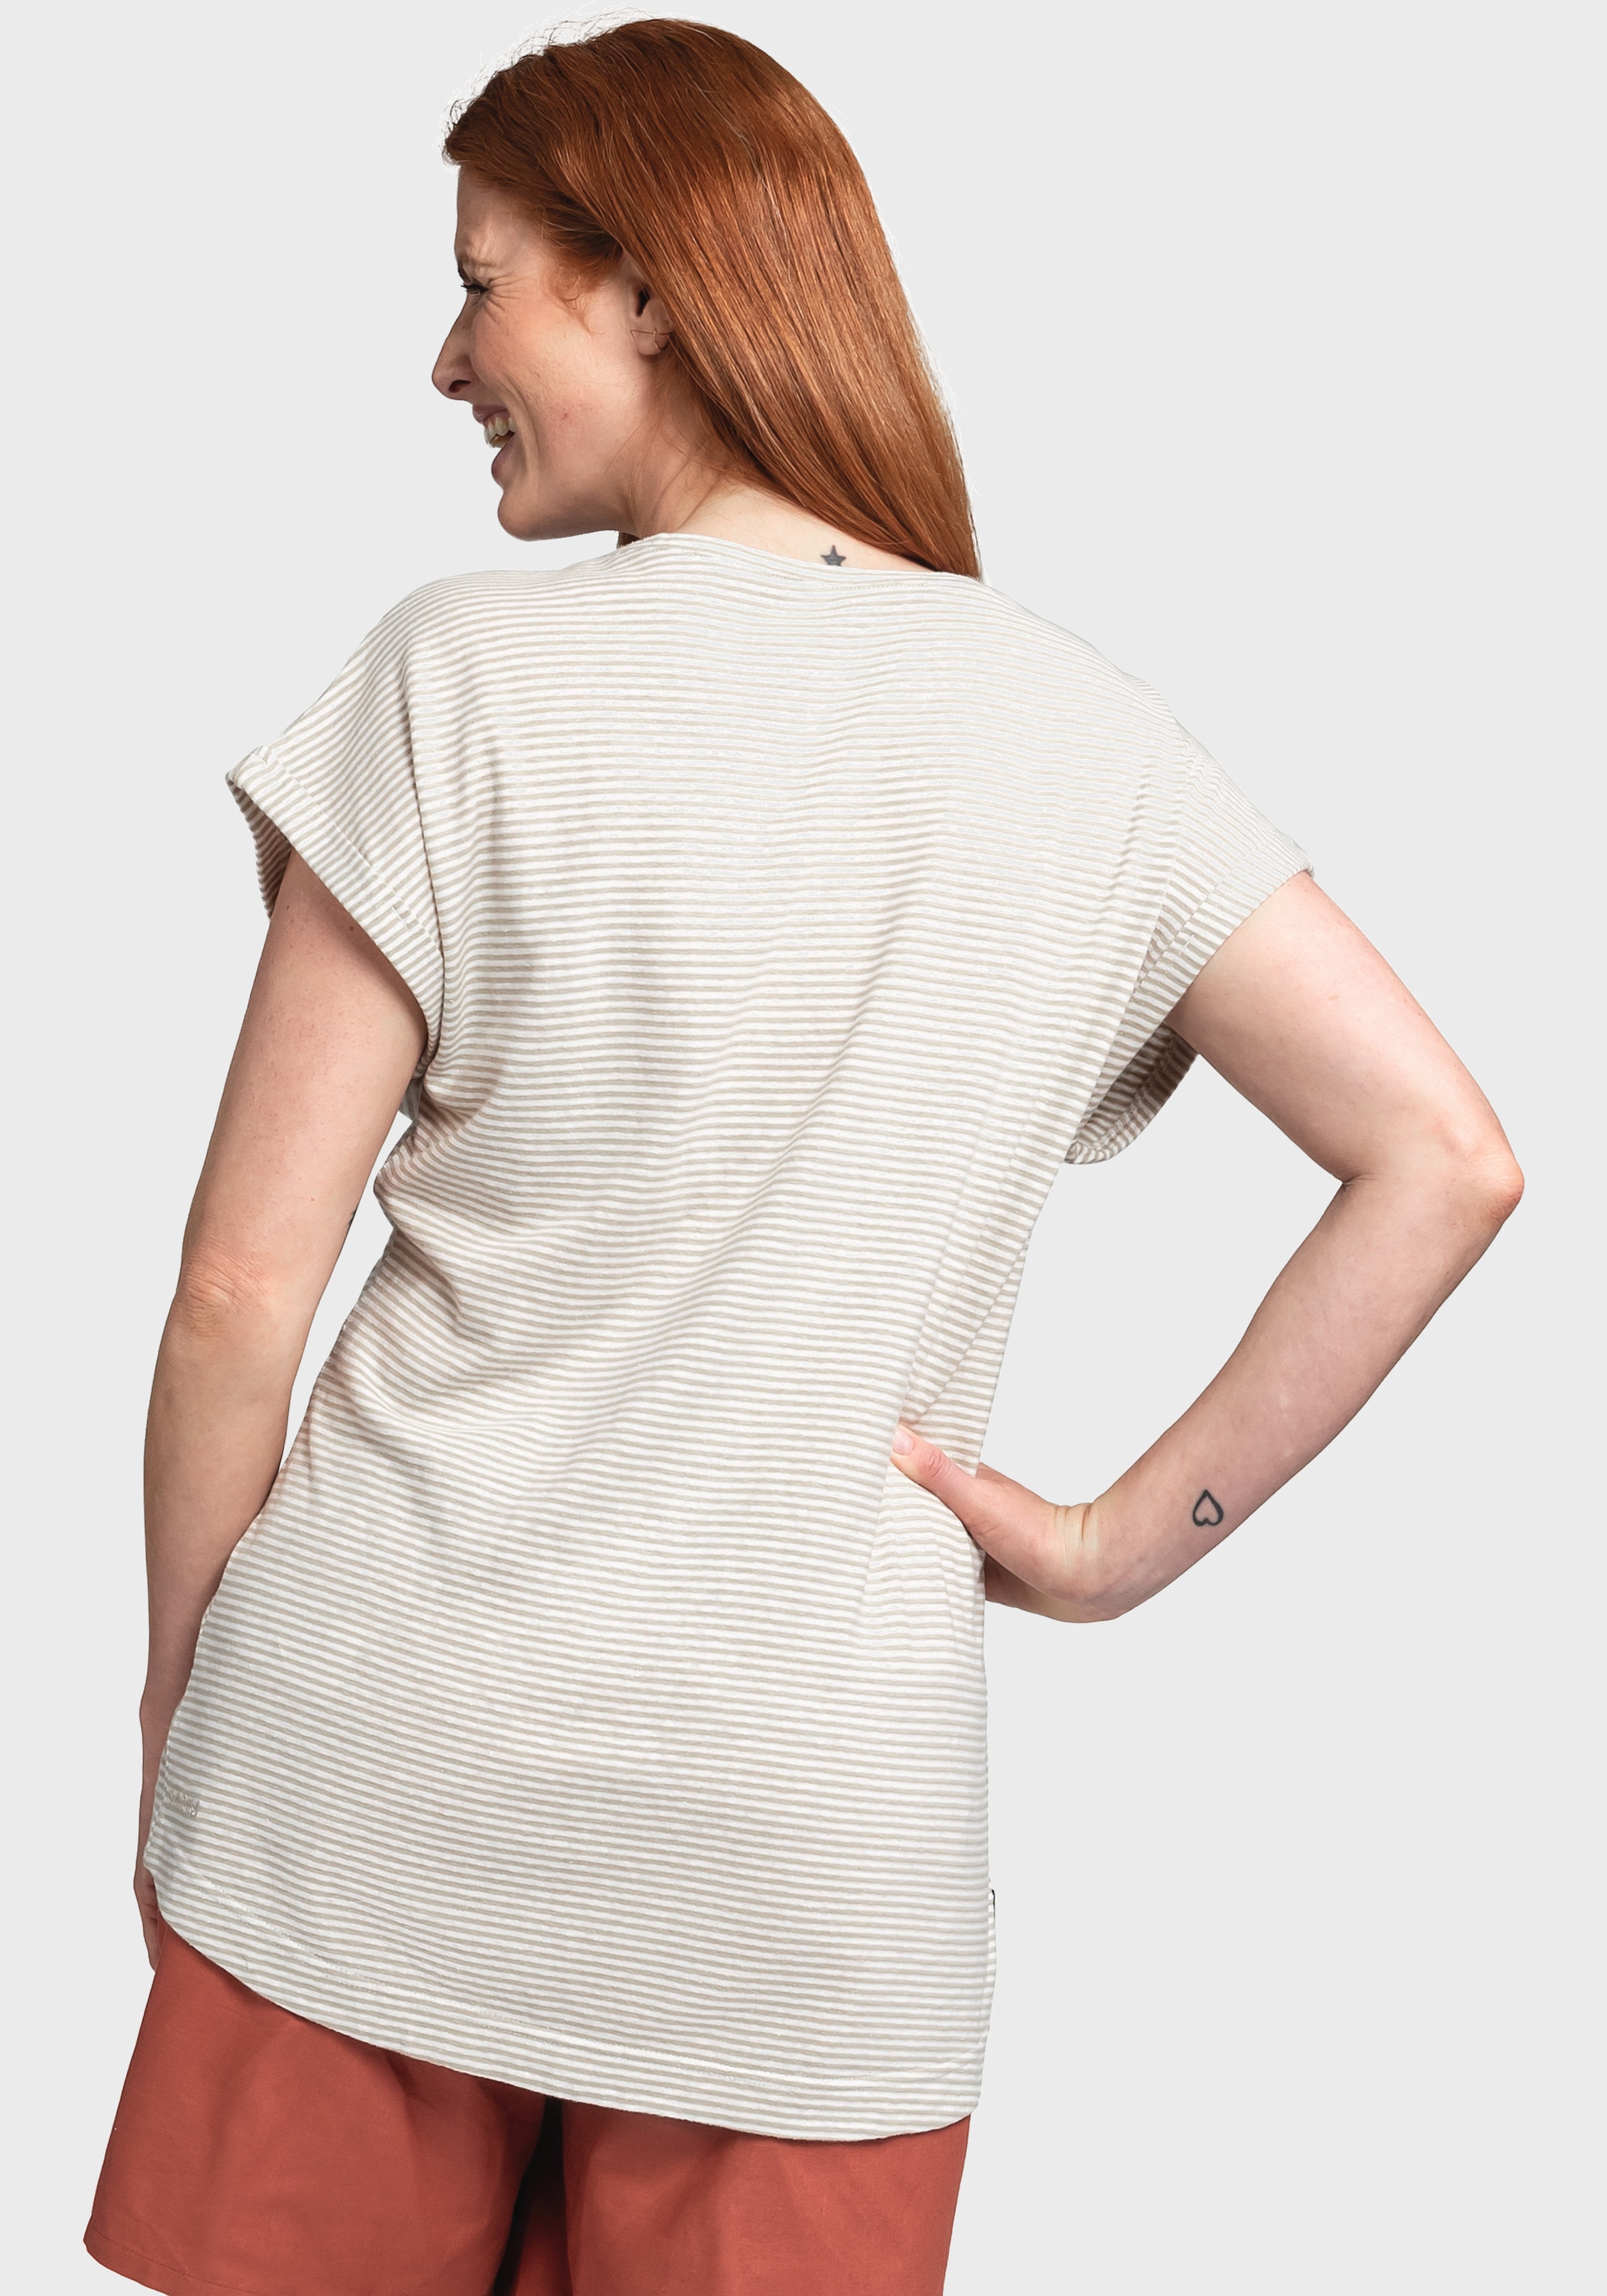 Shop Funktionsshirt »T Online Shirt im Murcia Schöffel L« kaufen | OTTO OTTO